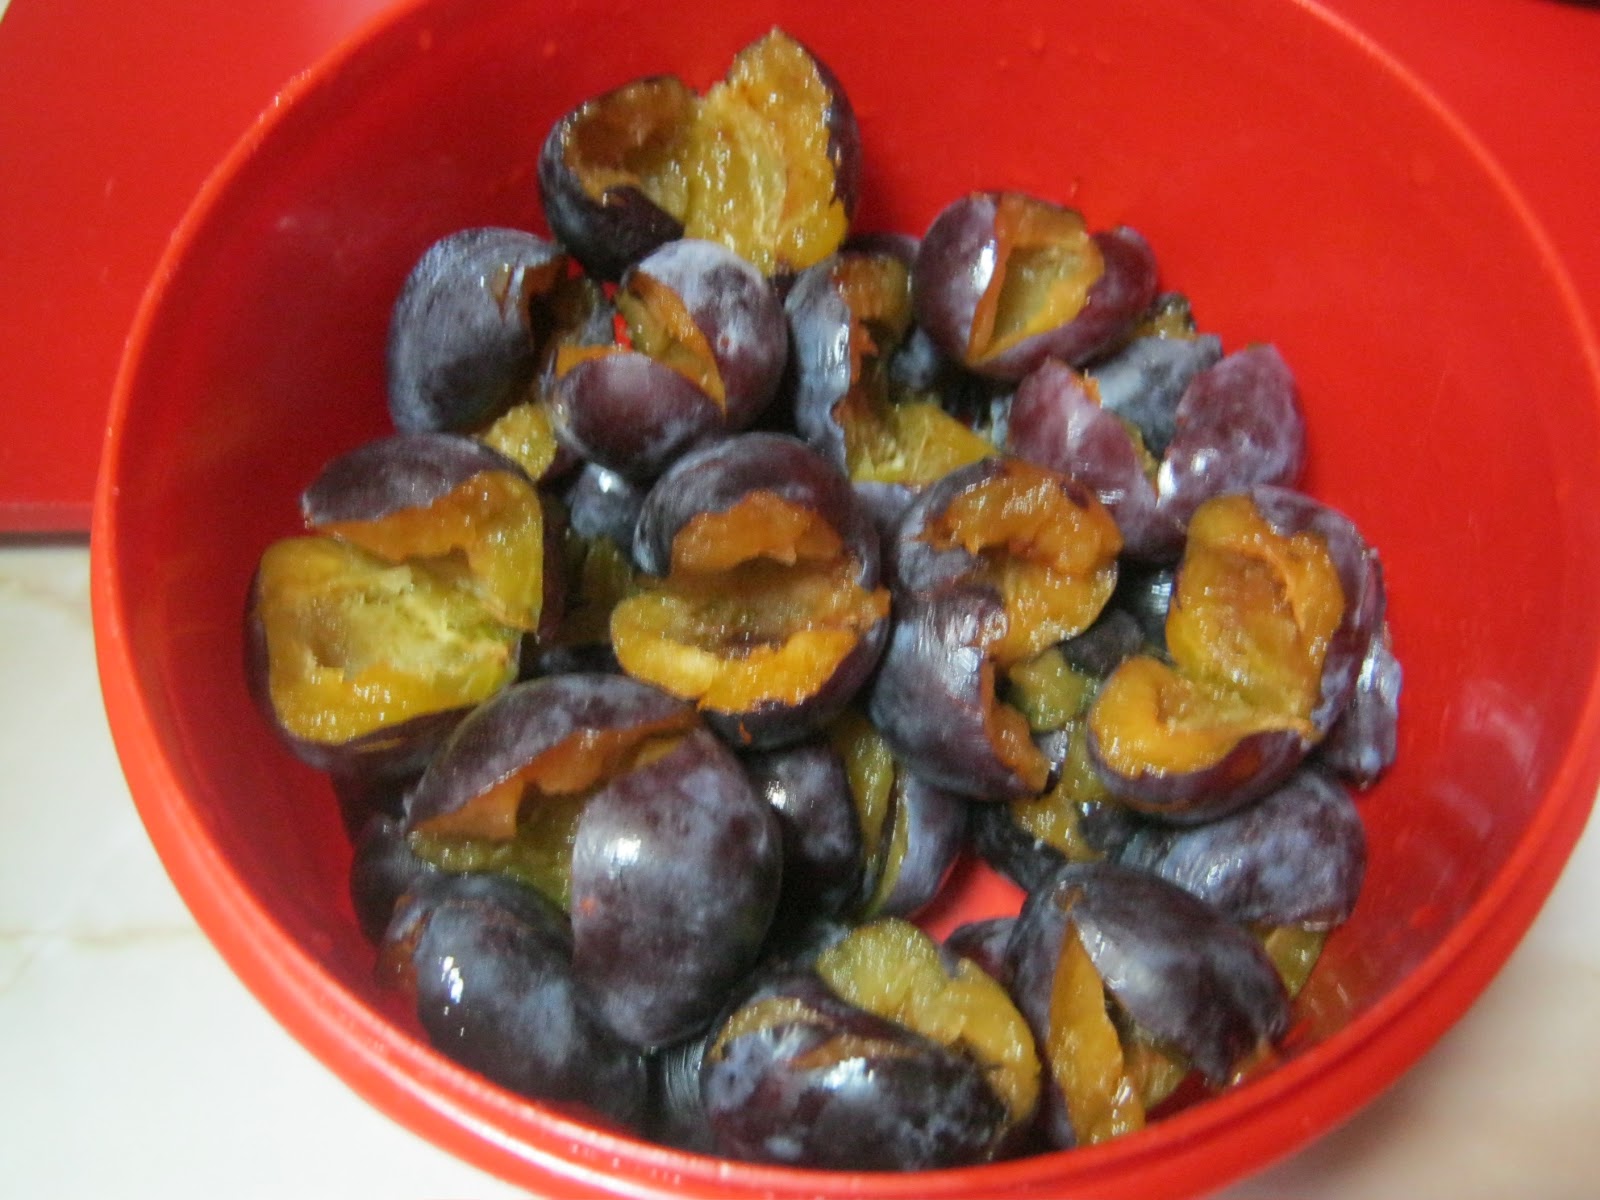 Gomboti(galuste) cu prune